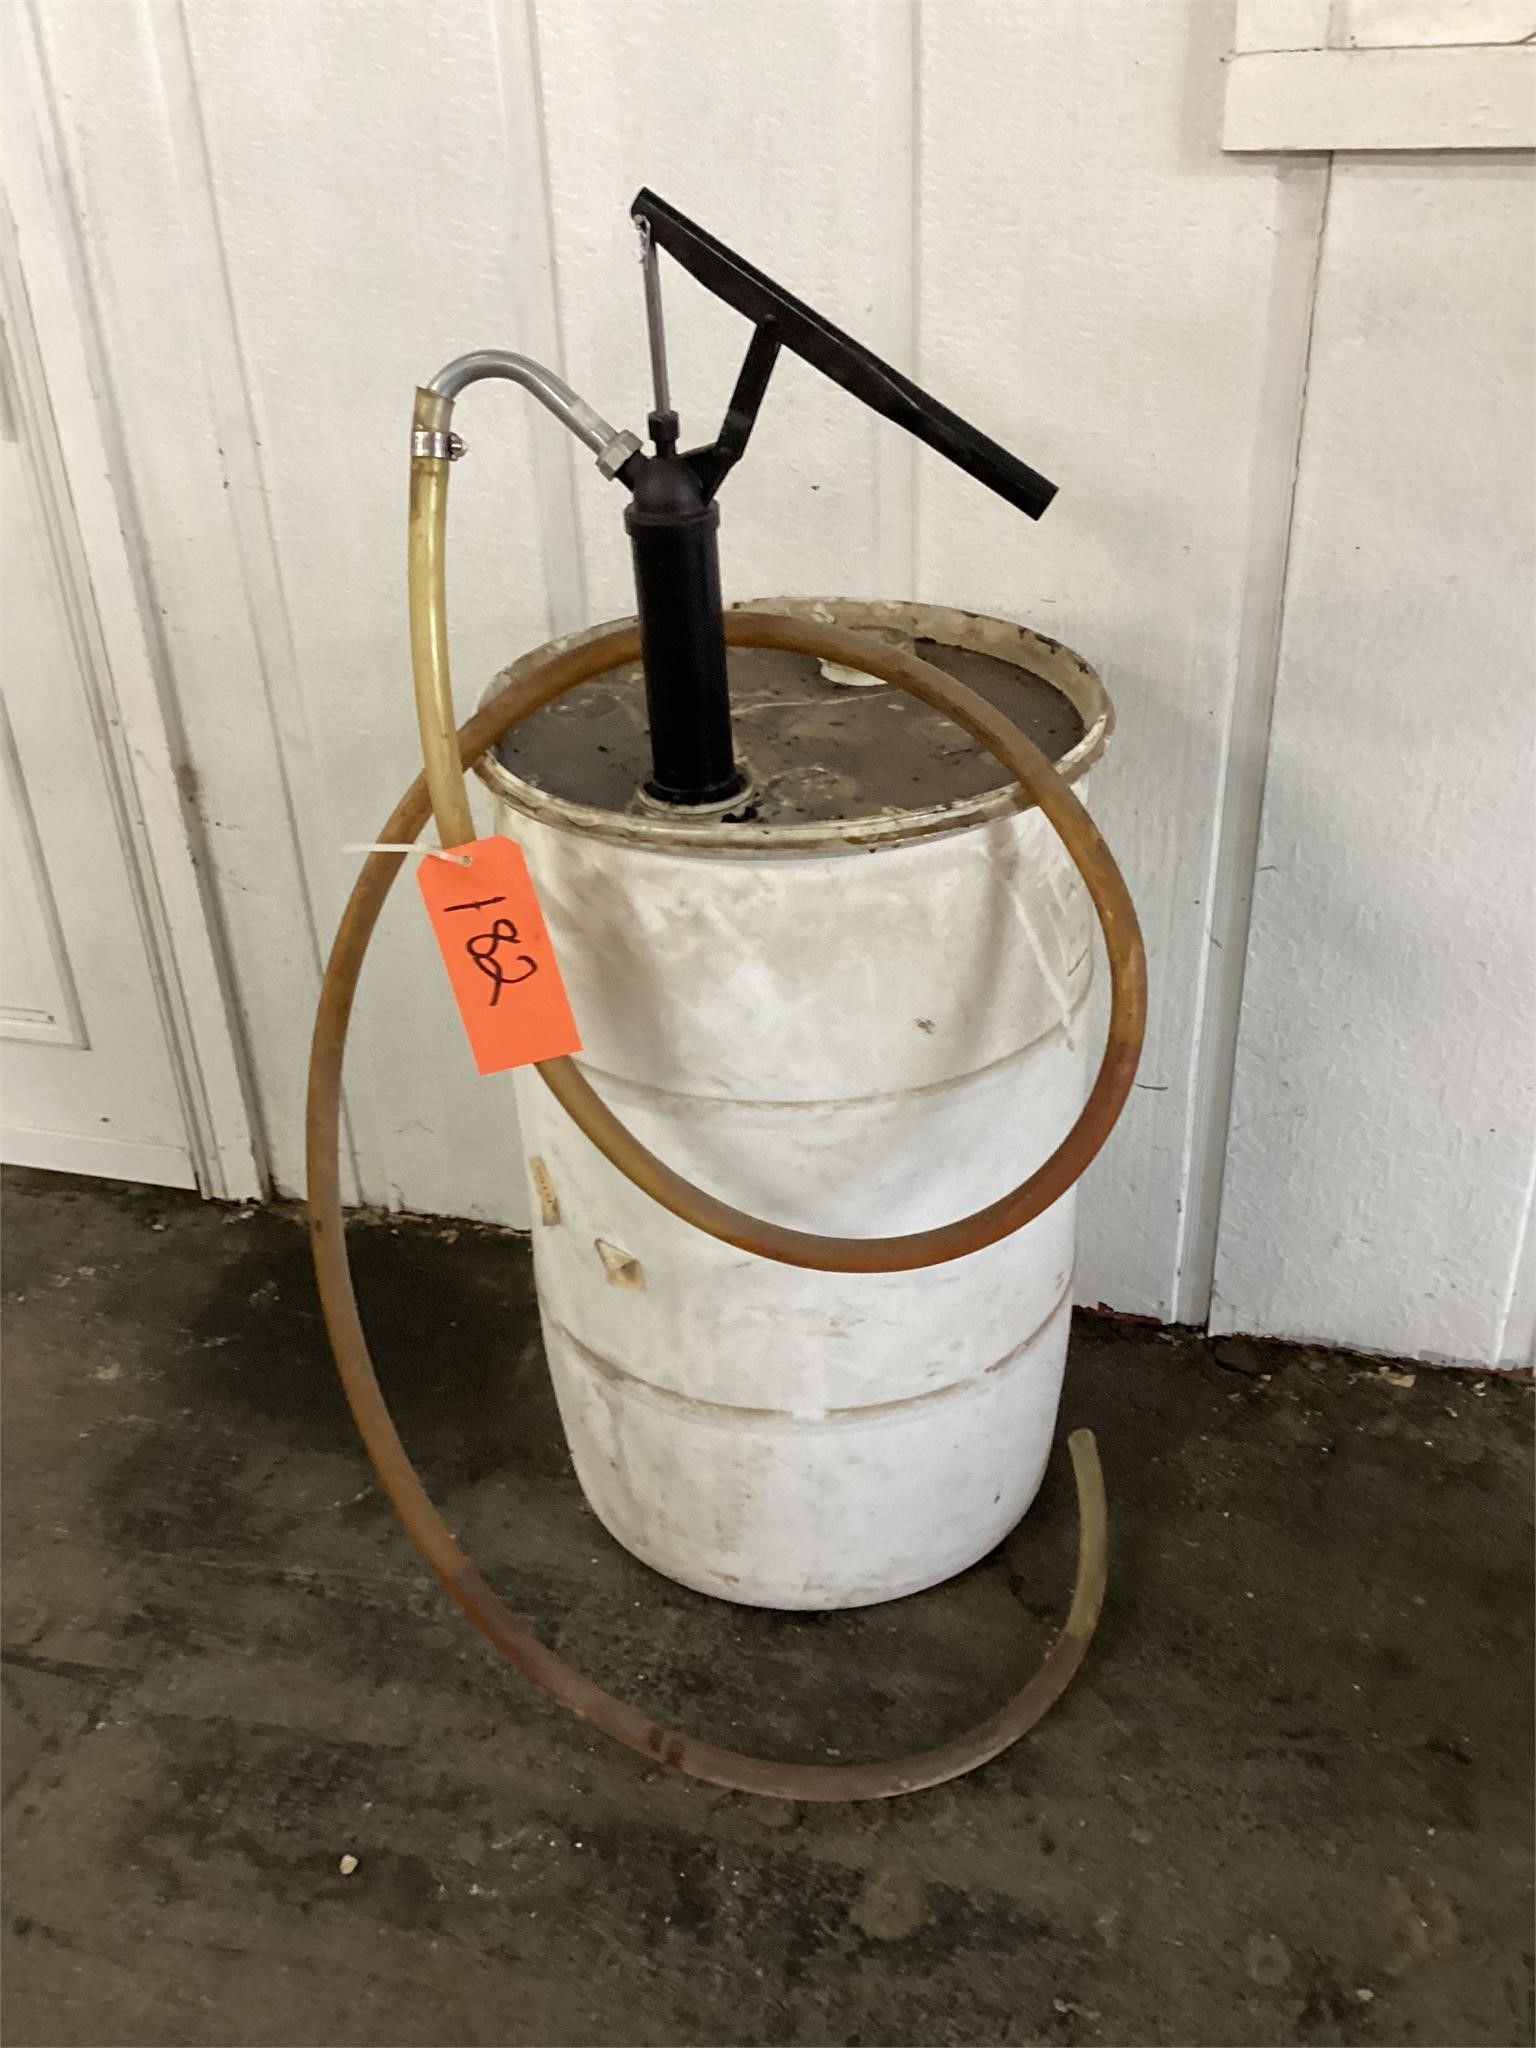 Barrel & hand pump